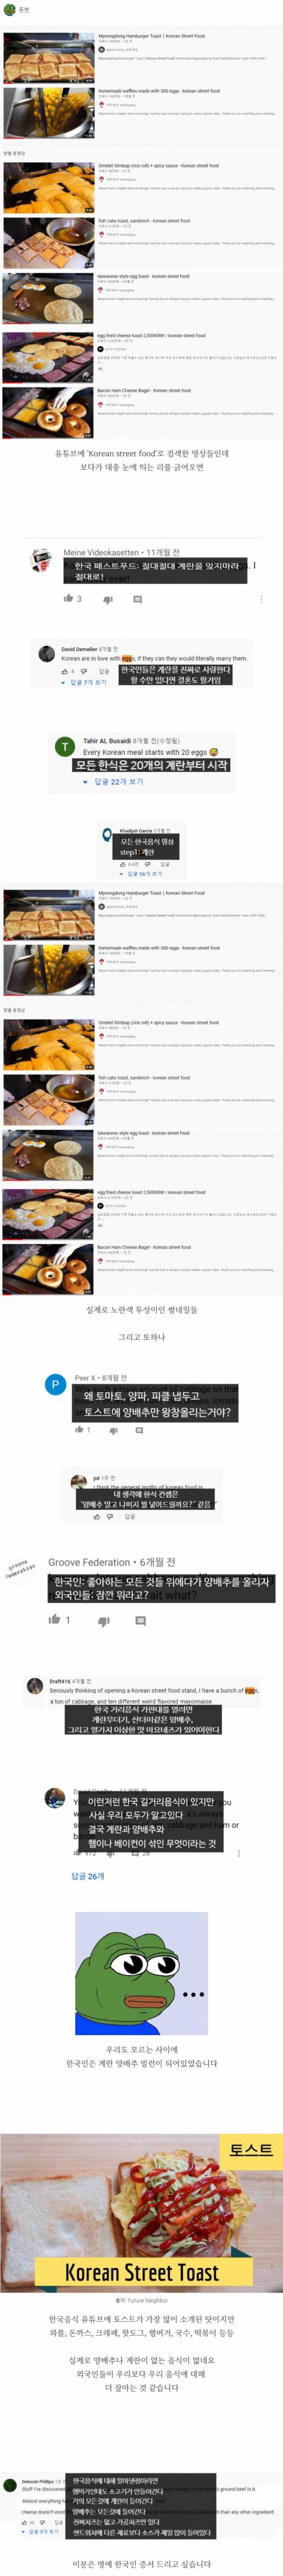 19 외국인들이 한국음식에 가지고 있는 의외의 이미지.jpg